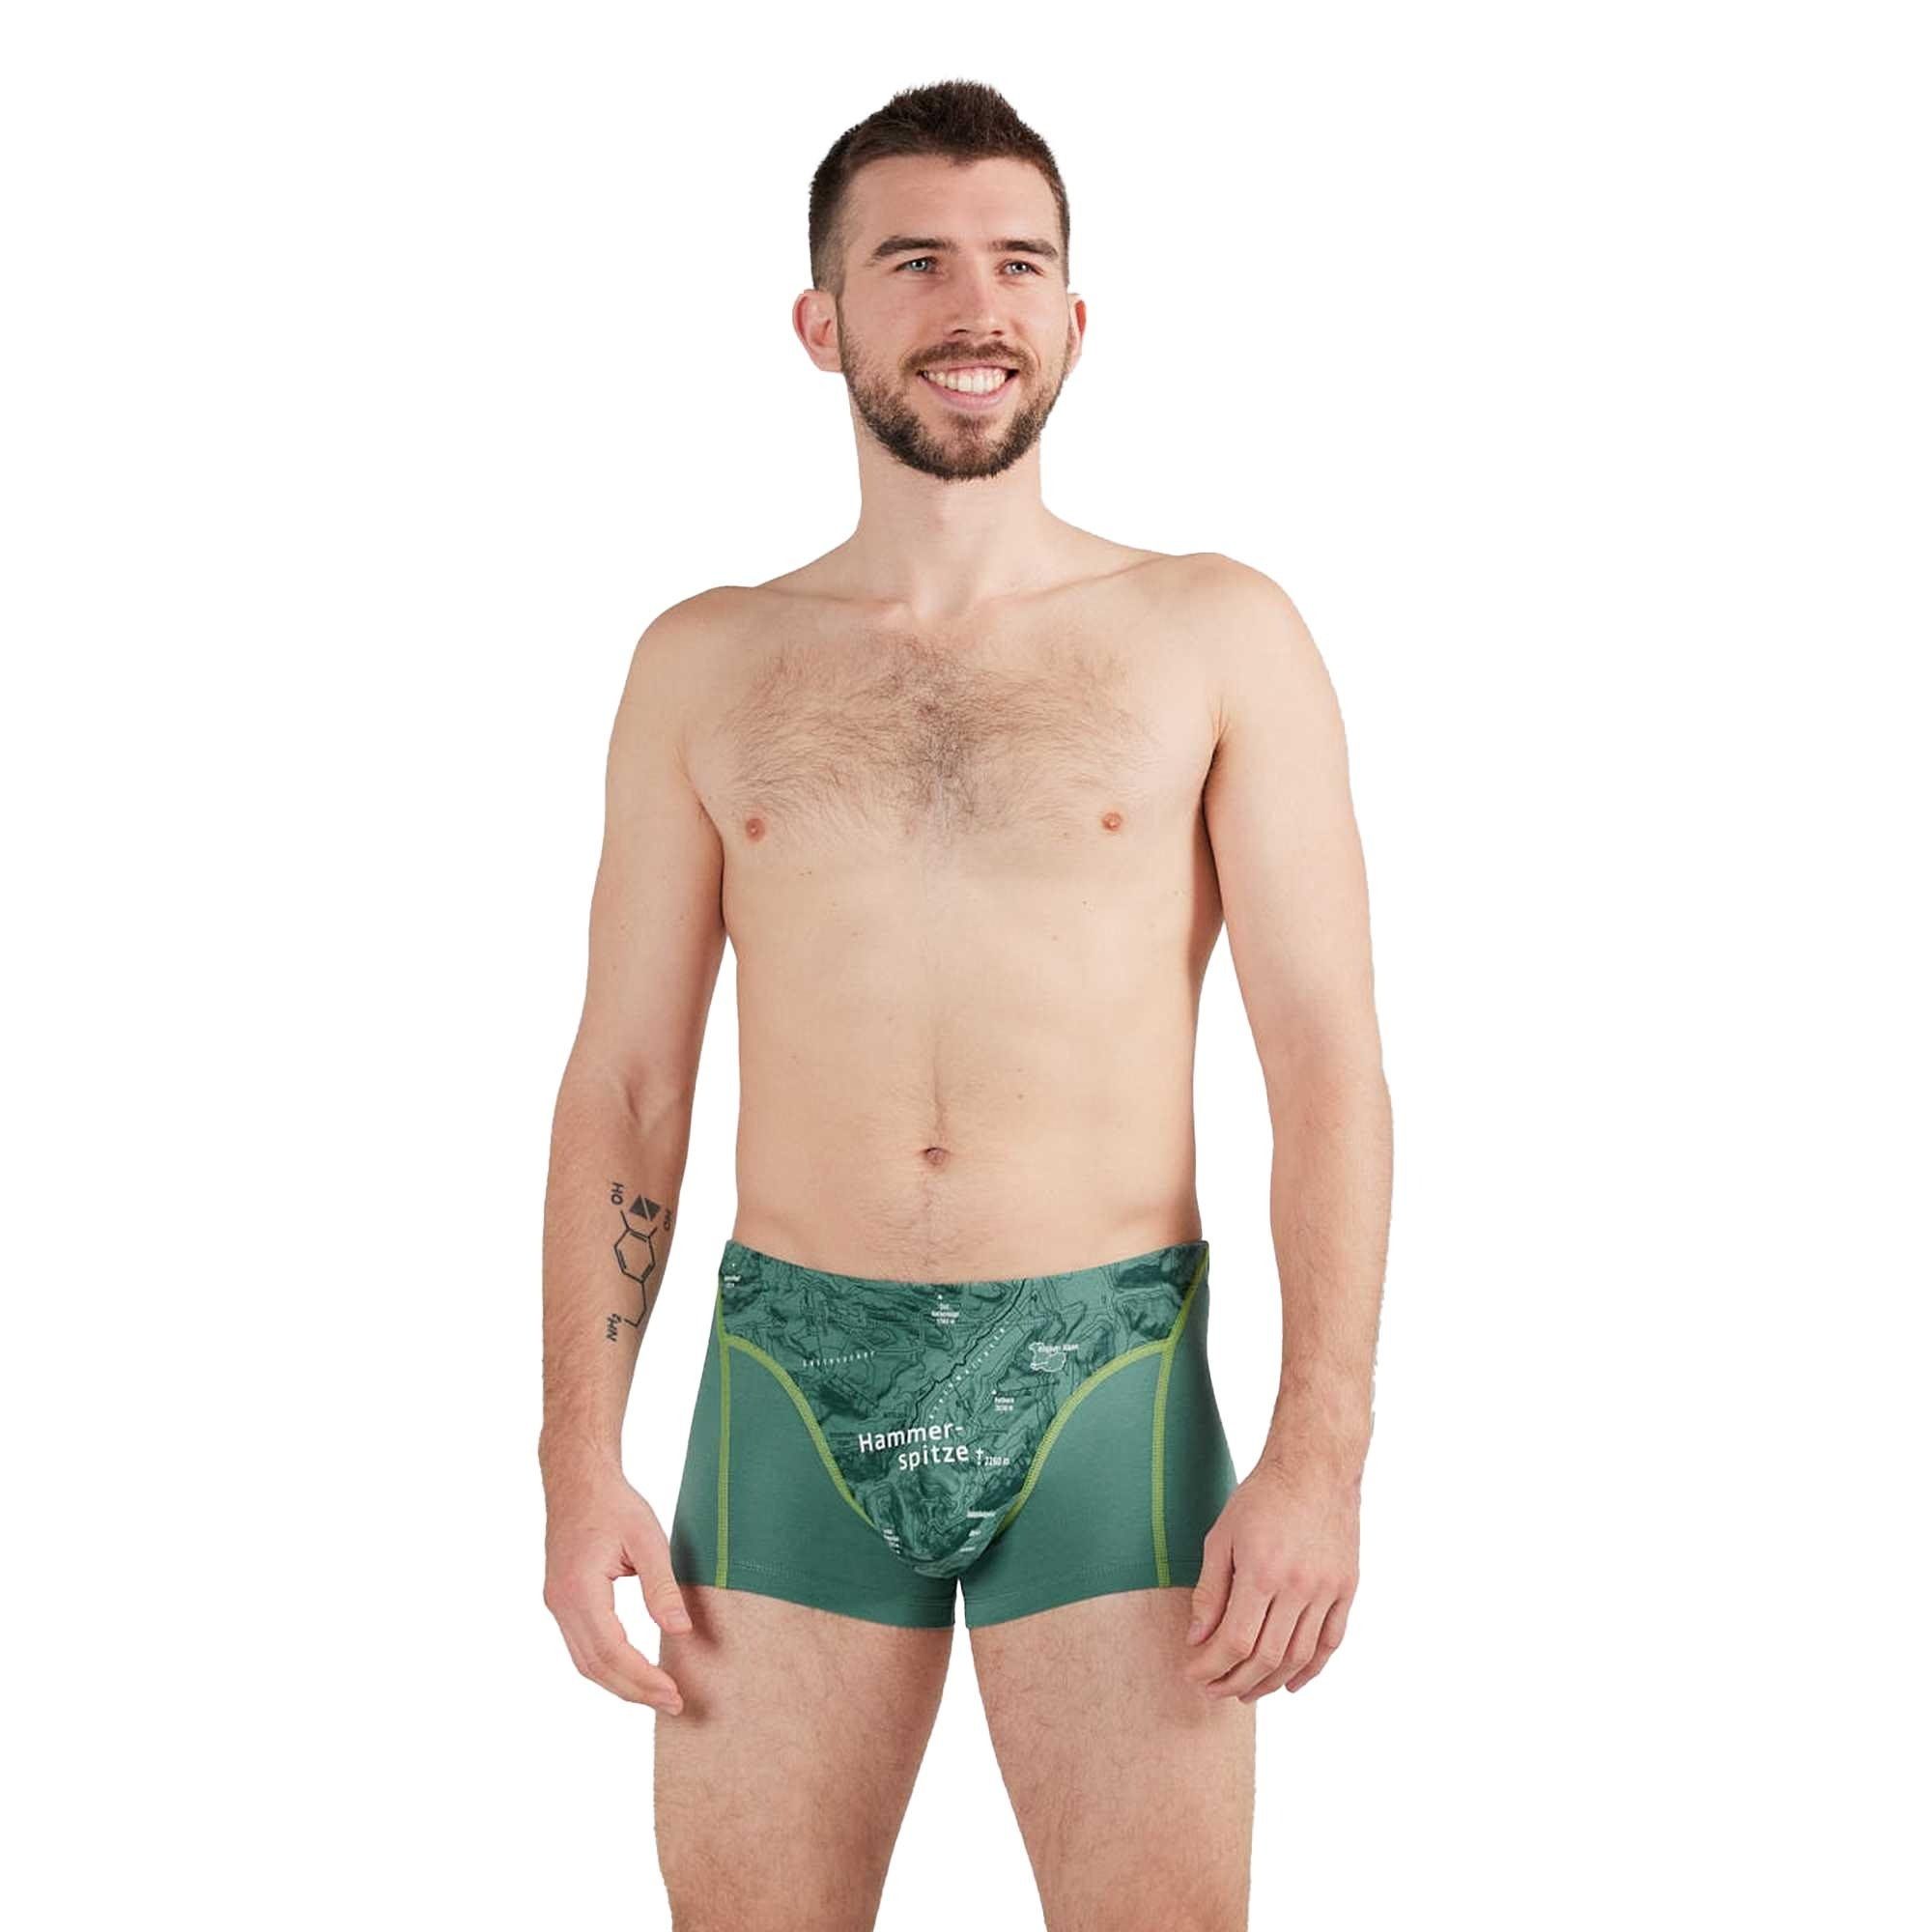 Herren Erde (Eukalyptus) Shorts, - Boxer Print, Boxershorts Hammerspitze Fleck schöner Ein Bio-Baumwolle